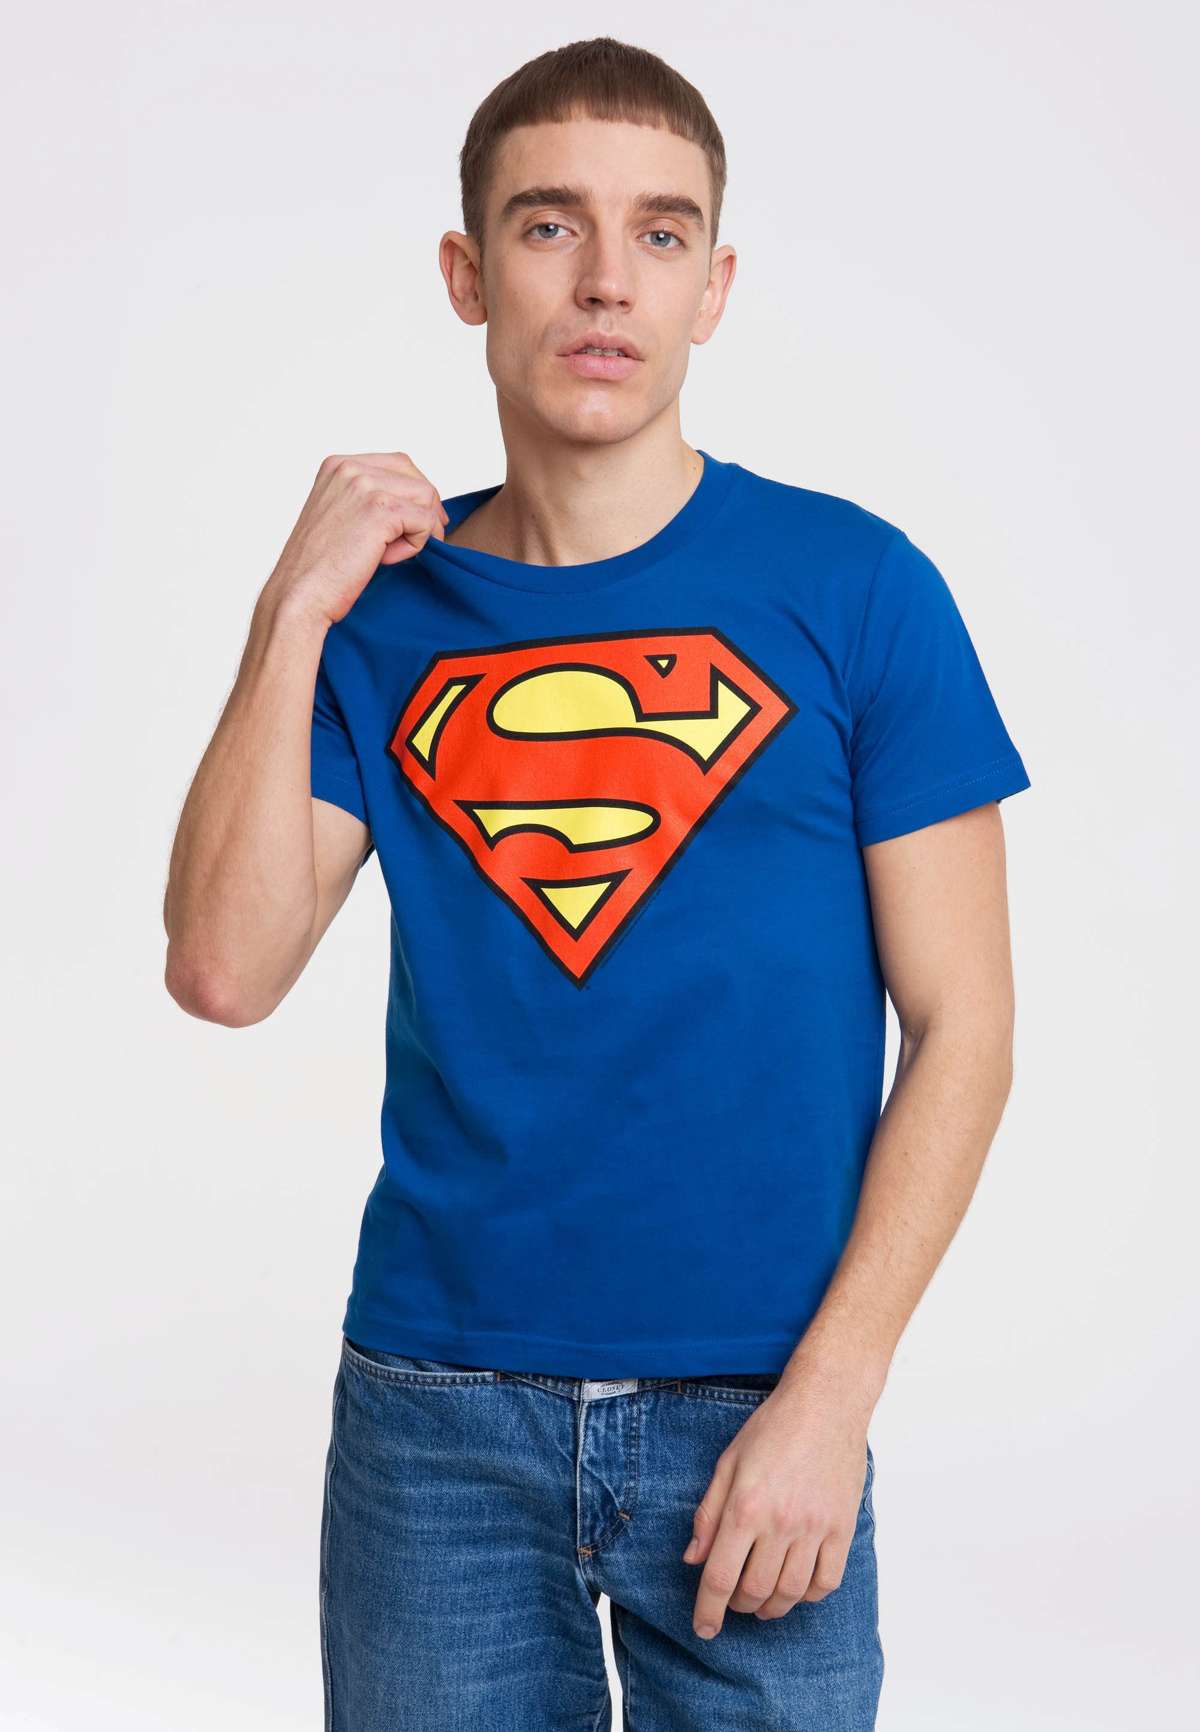 Футболка с модным логотипом Супермена